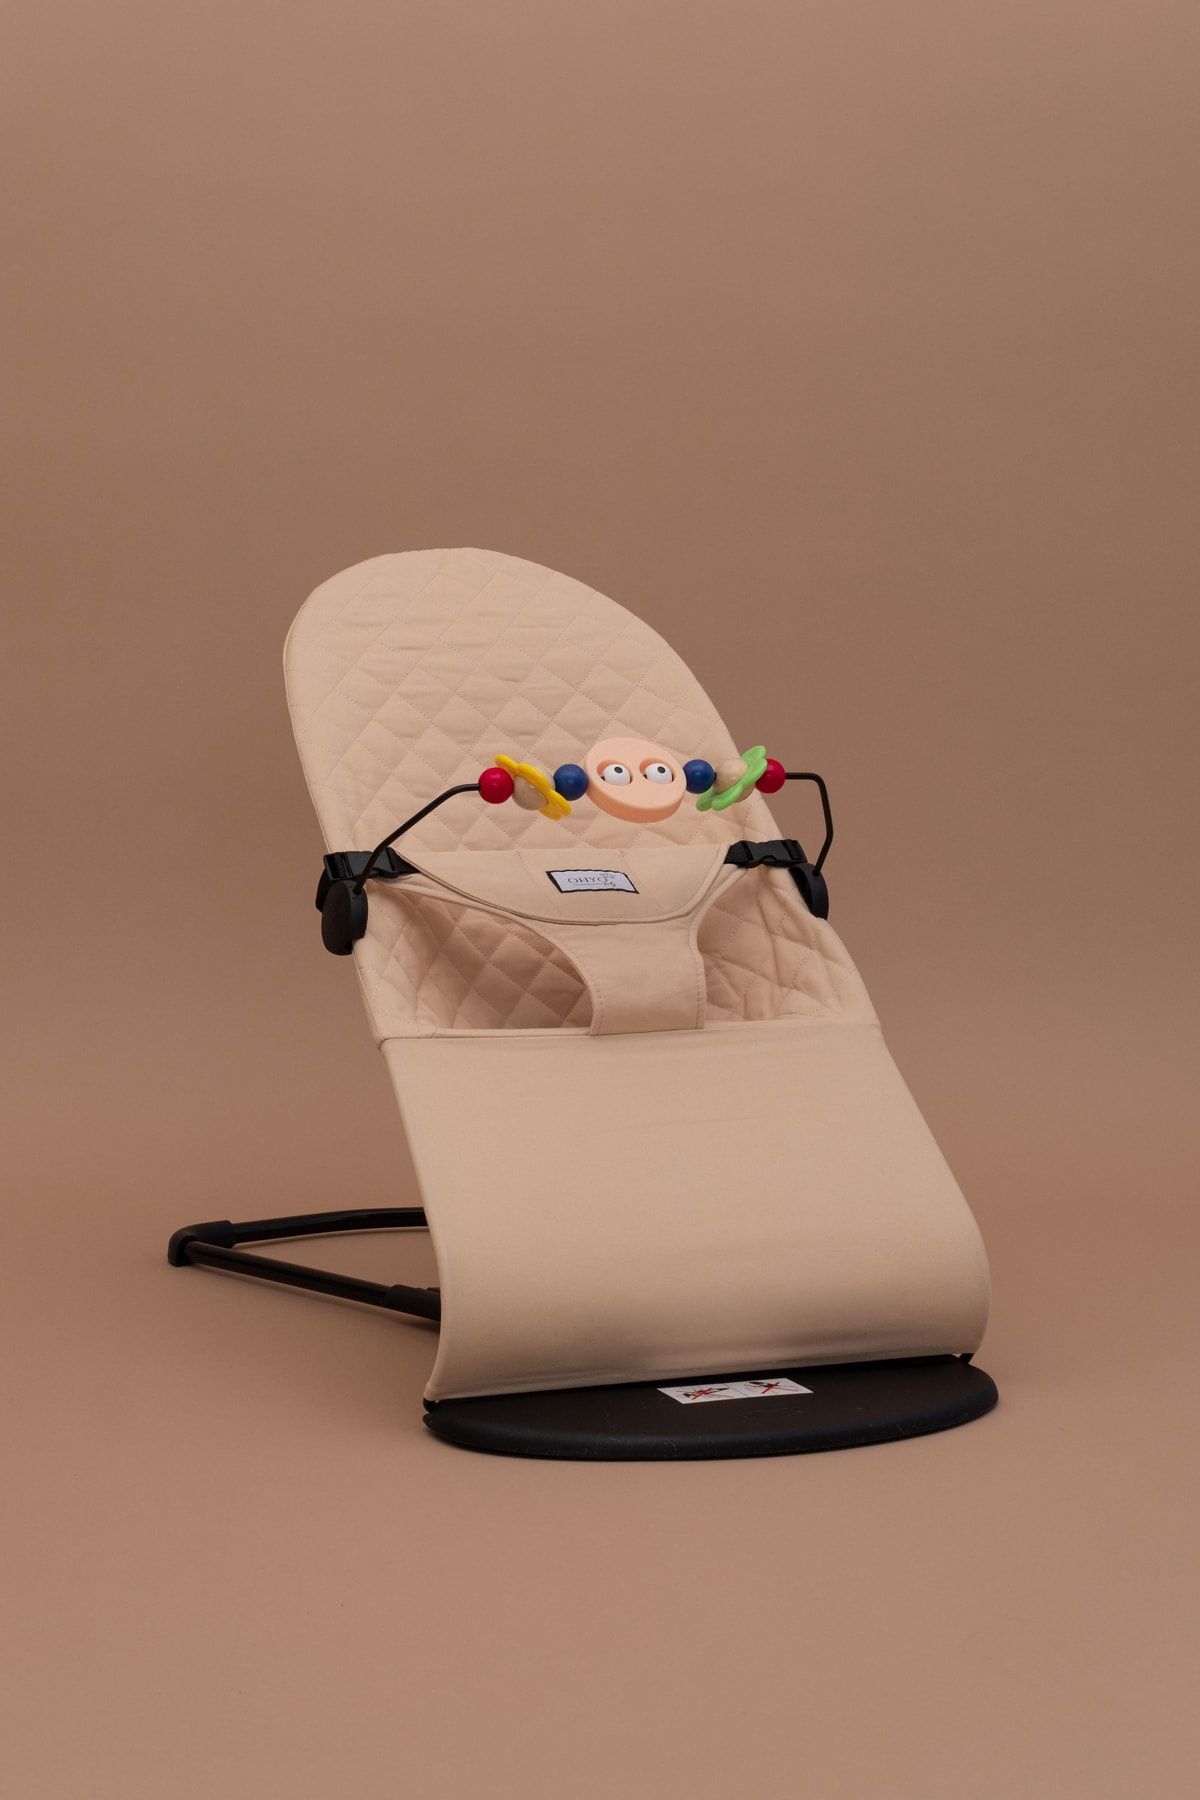 OHYO Premium Cotton Bebekler Için Üç Kademeli Kolay Taşınabilir Sallanan Ana Kucağı- Bej